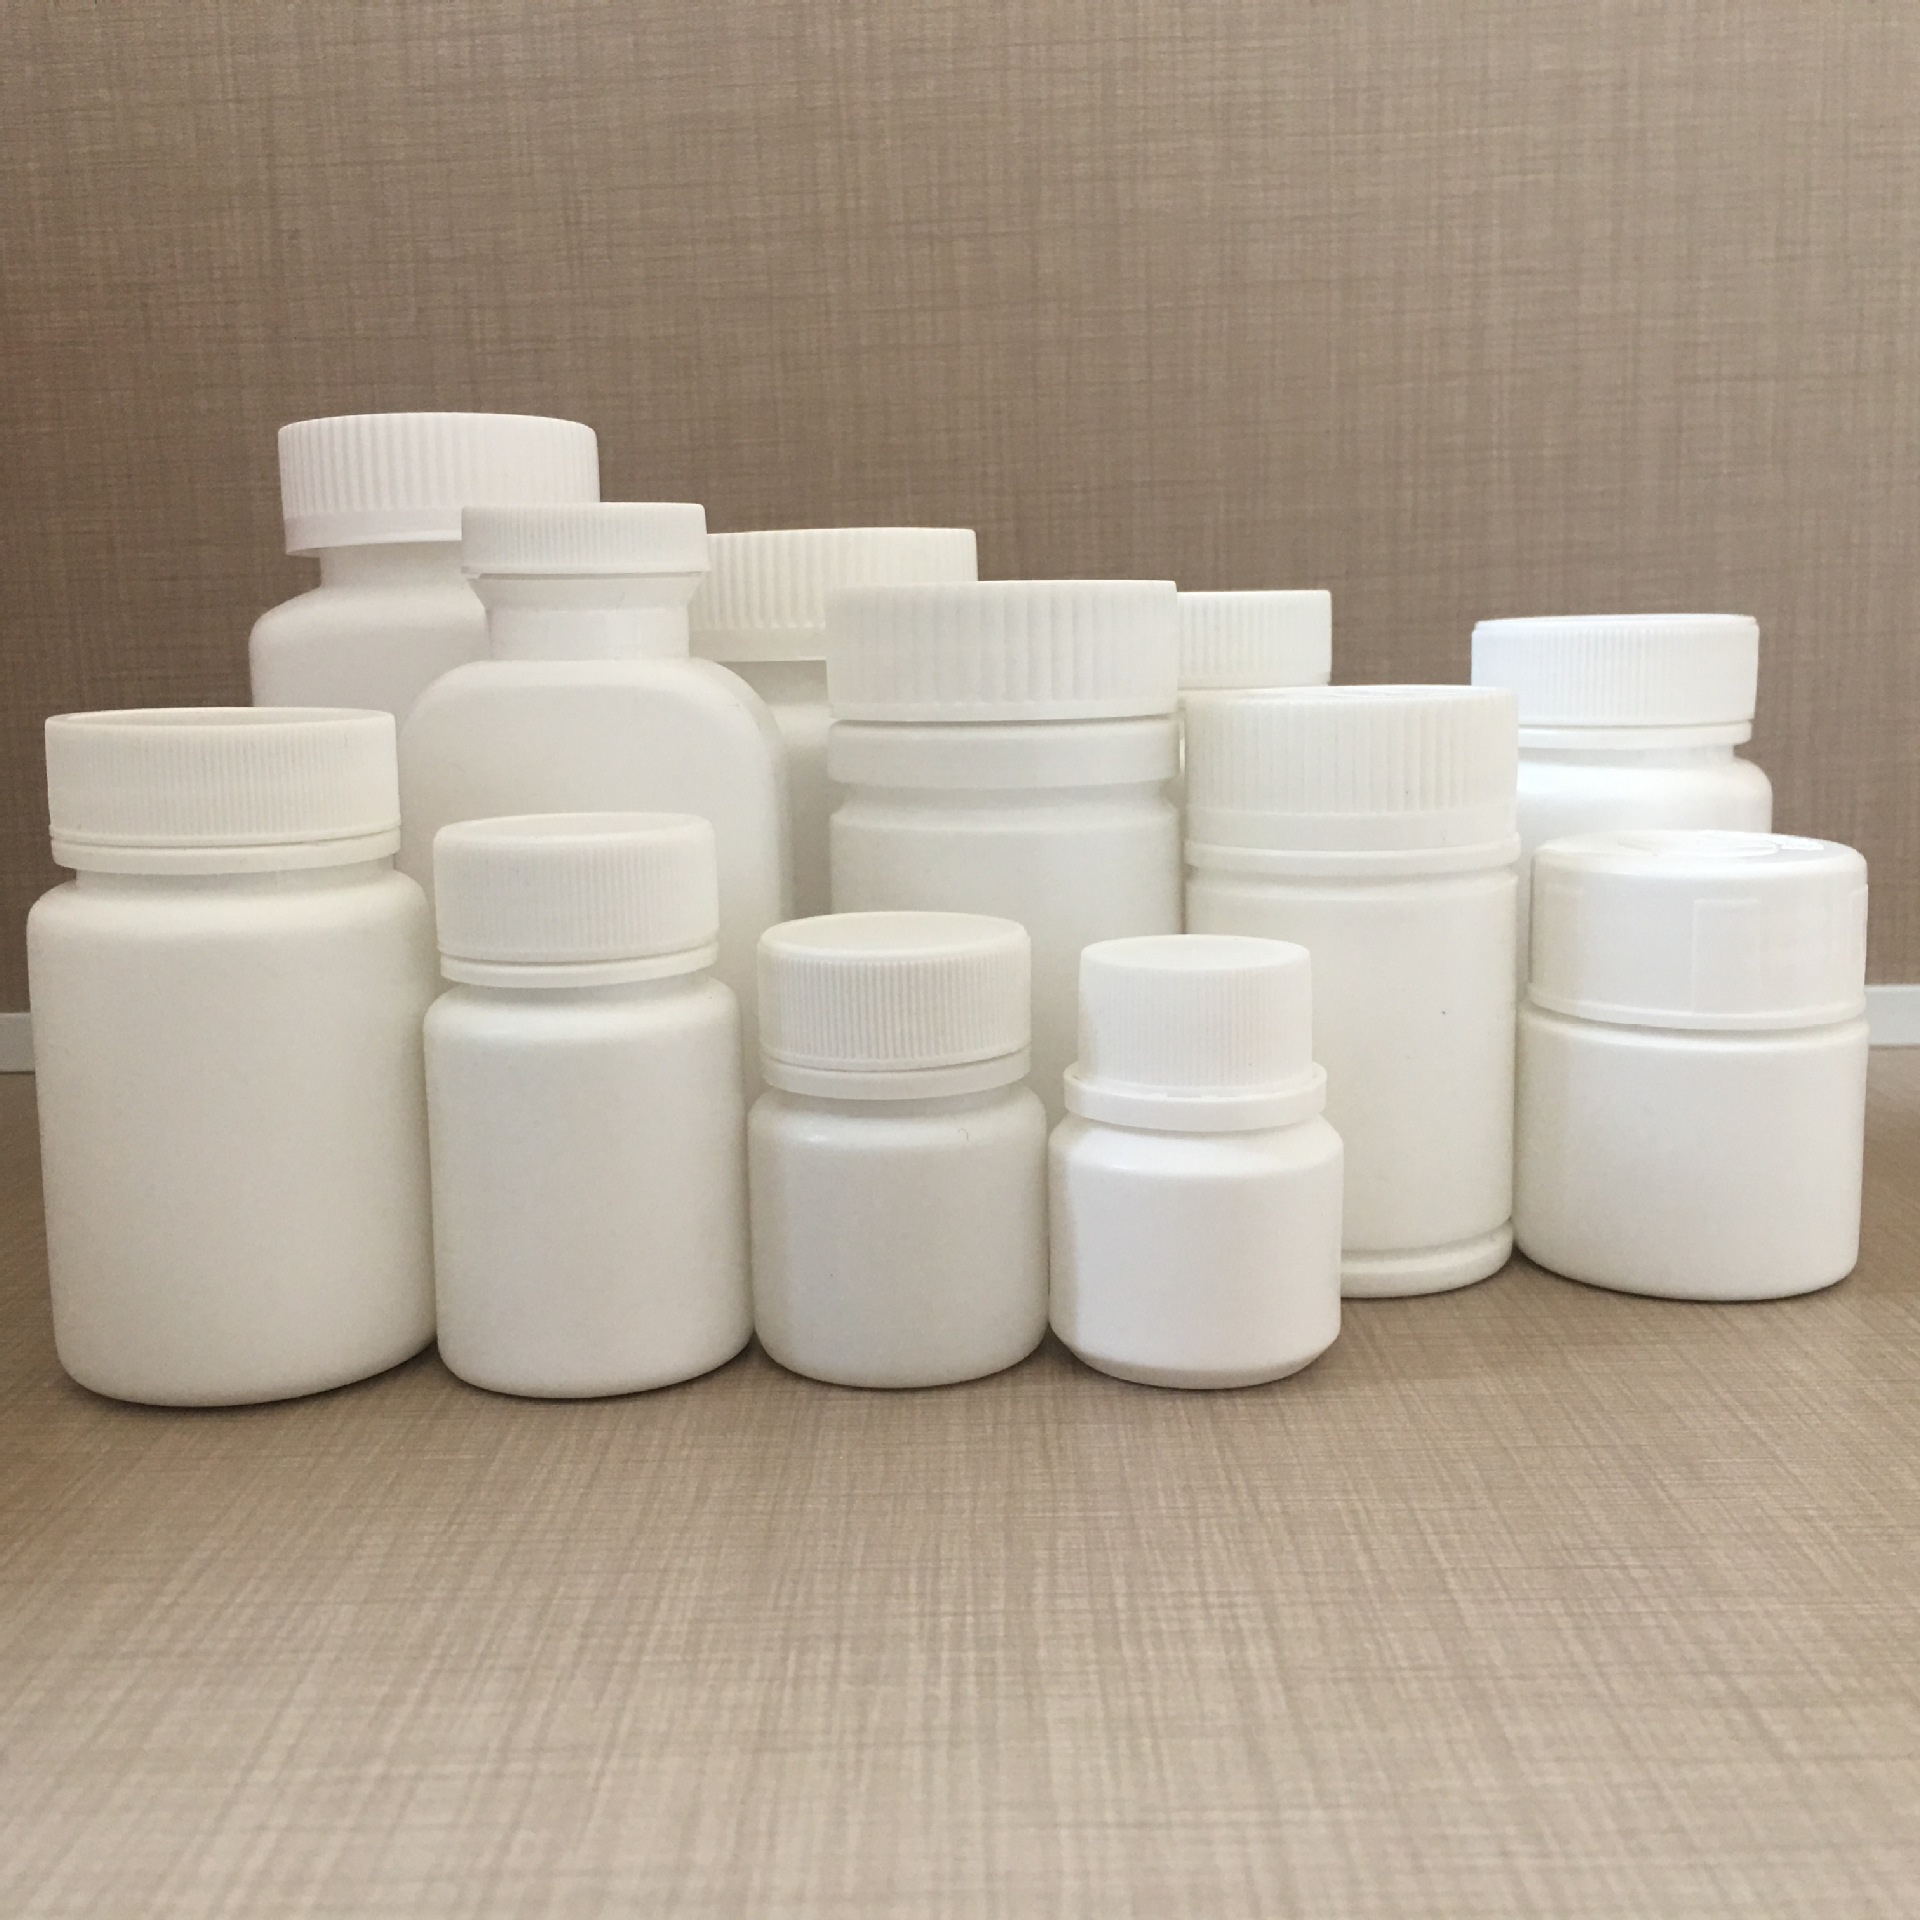 厂家直销pet塑料罐食品塑料罐药用塑料罐包装罐现货供应价格优惠示例图14